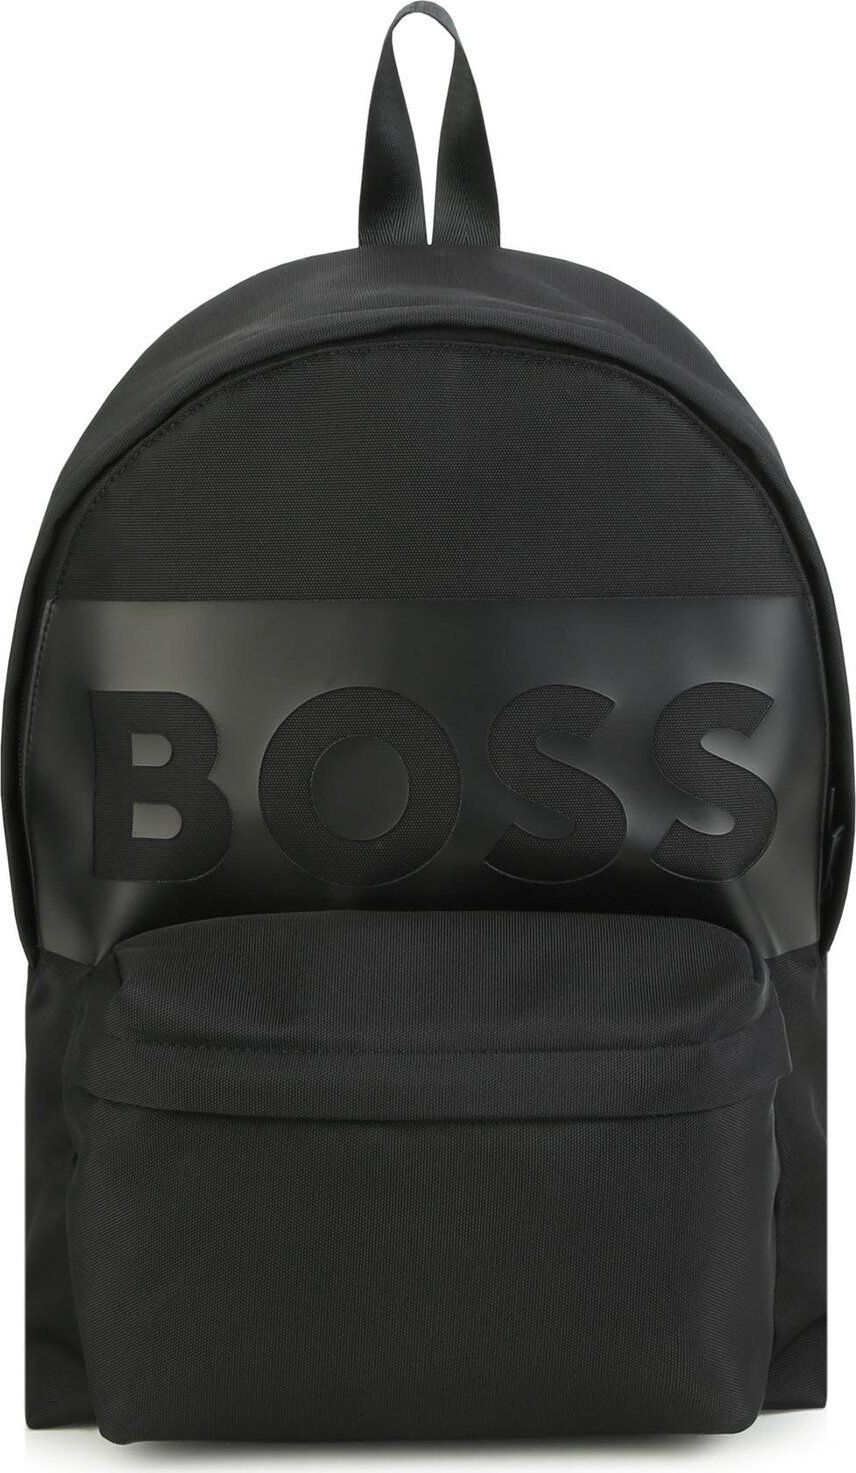 Batoh Boss J20410 Black 09B